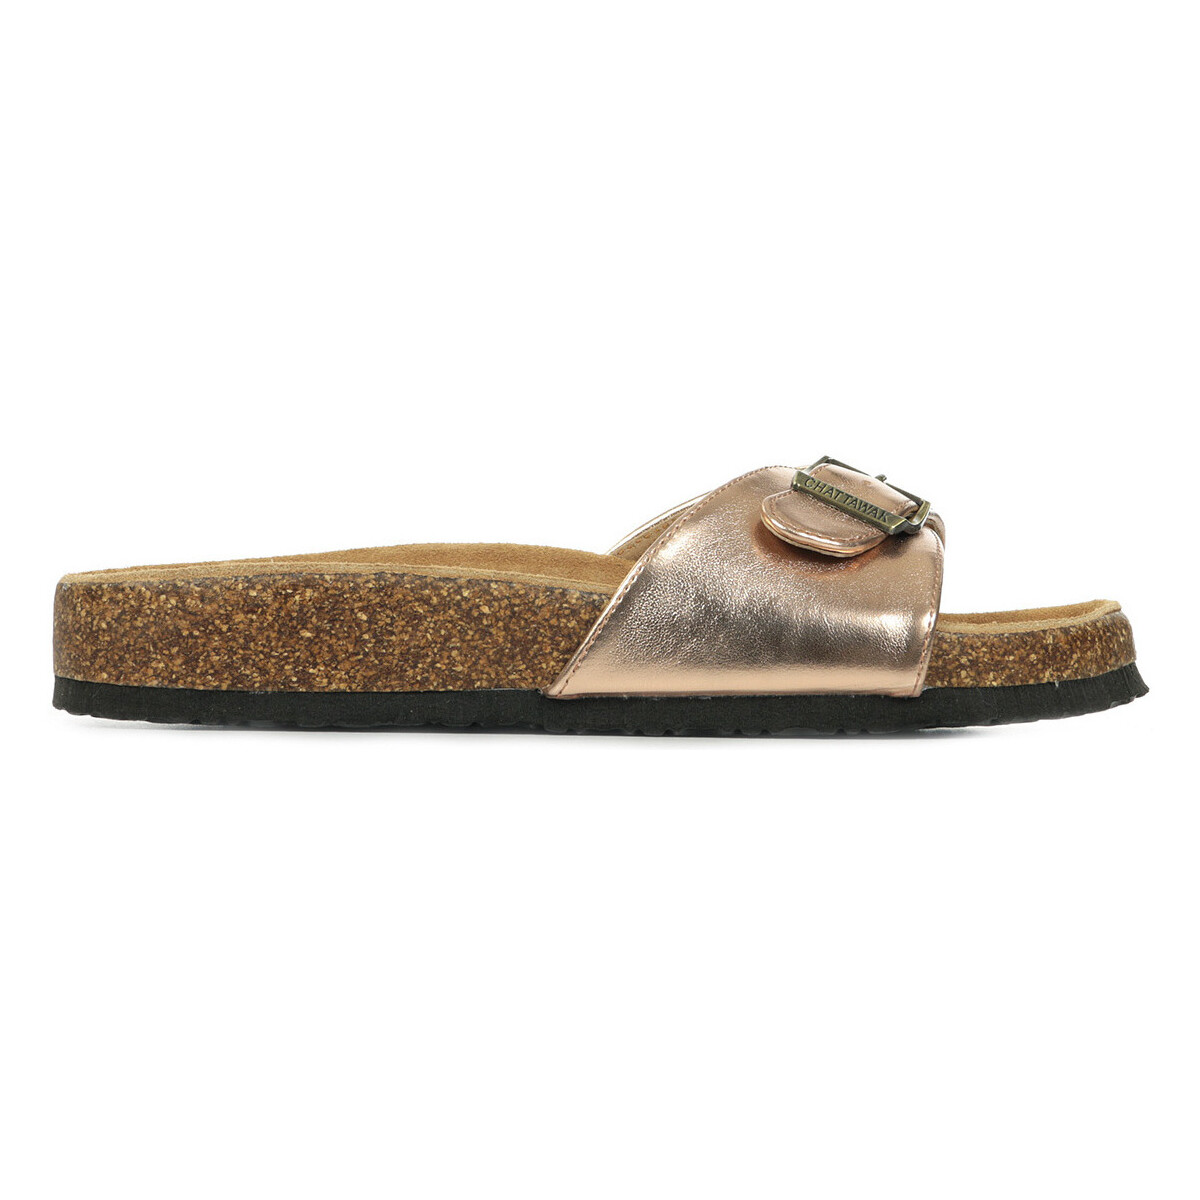 Schuhe Damen Sandalen / Sandaletten Chattawak Opaline Gold